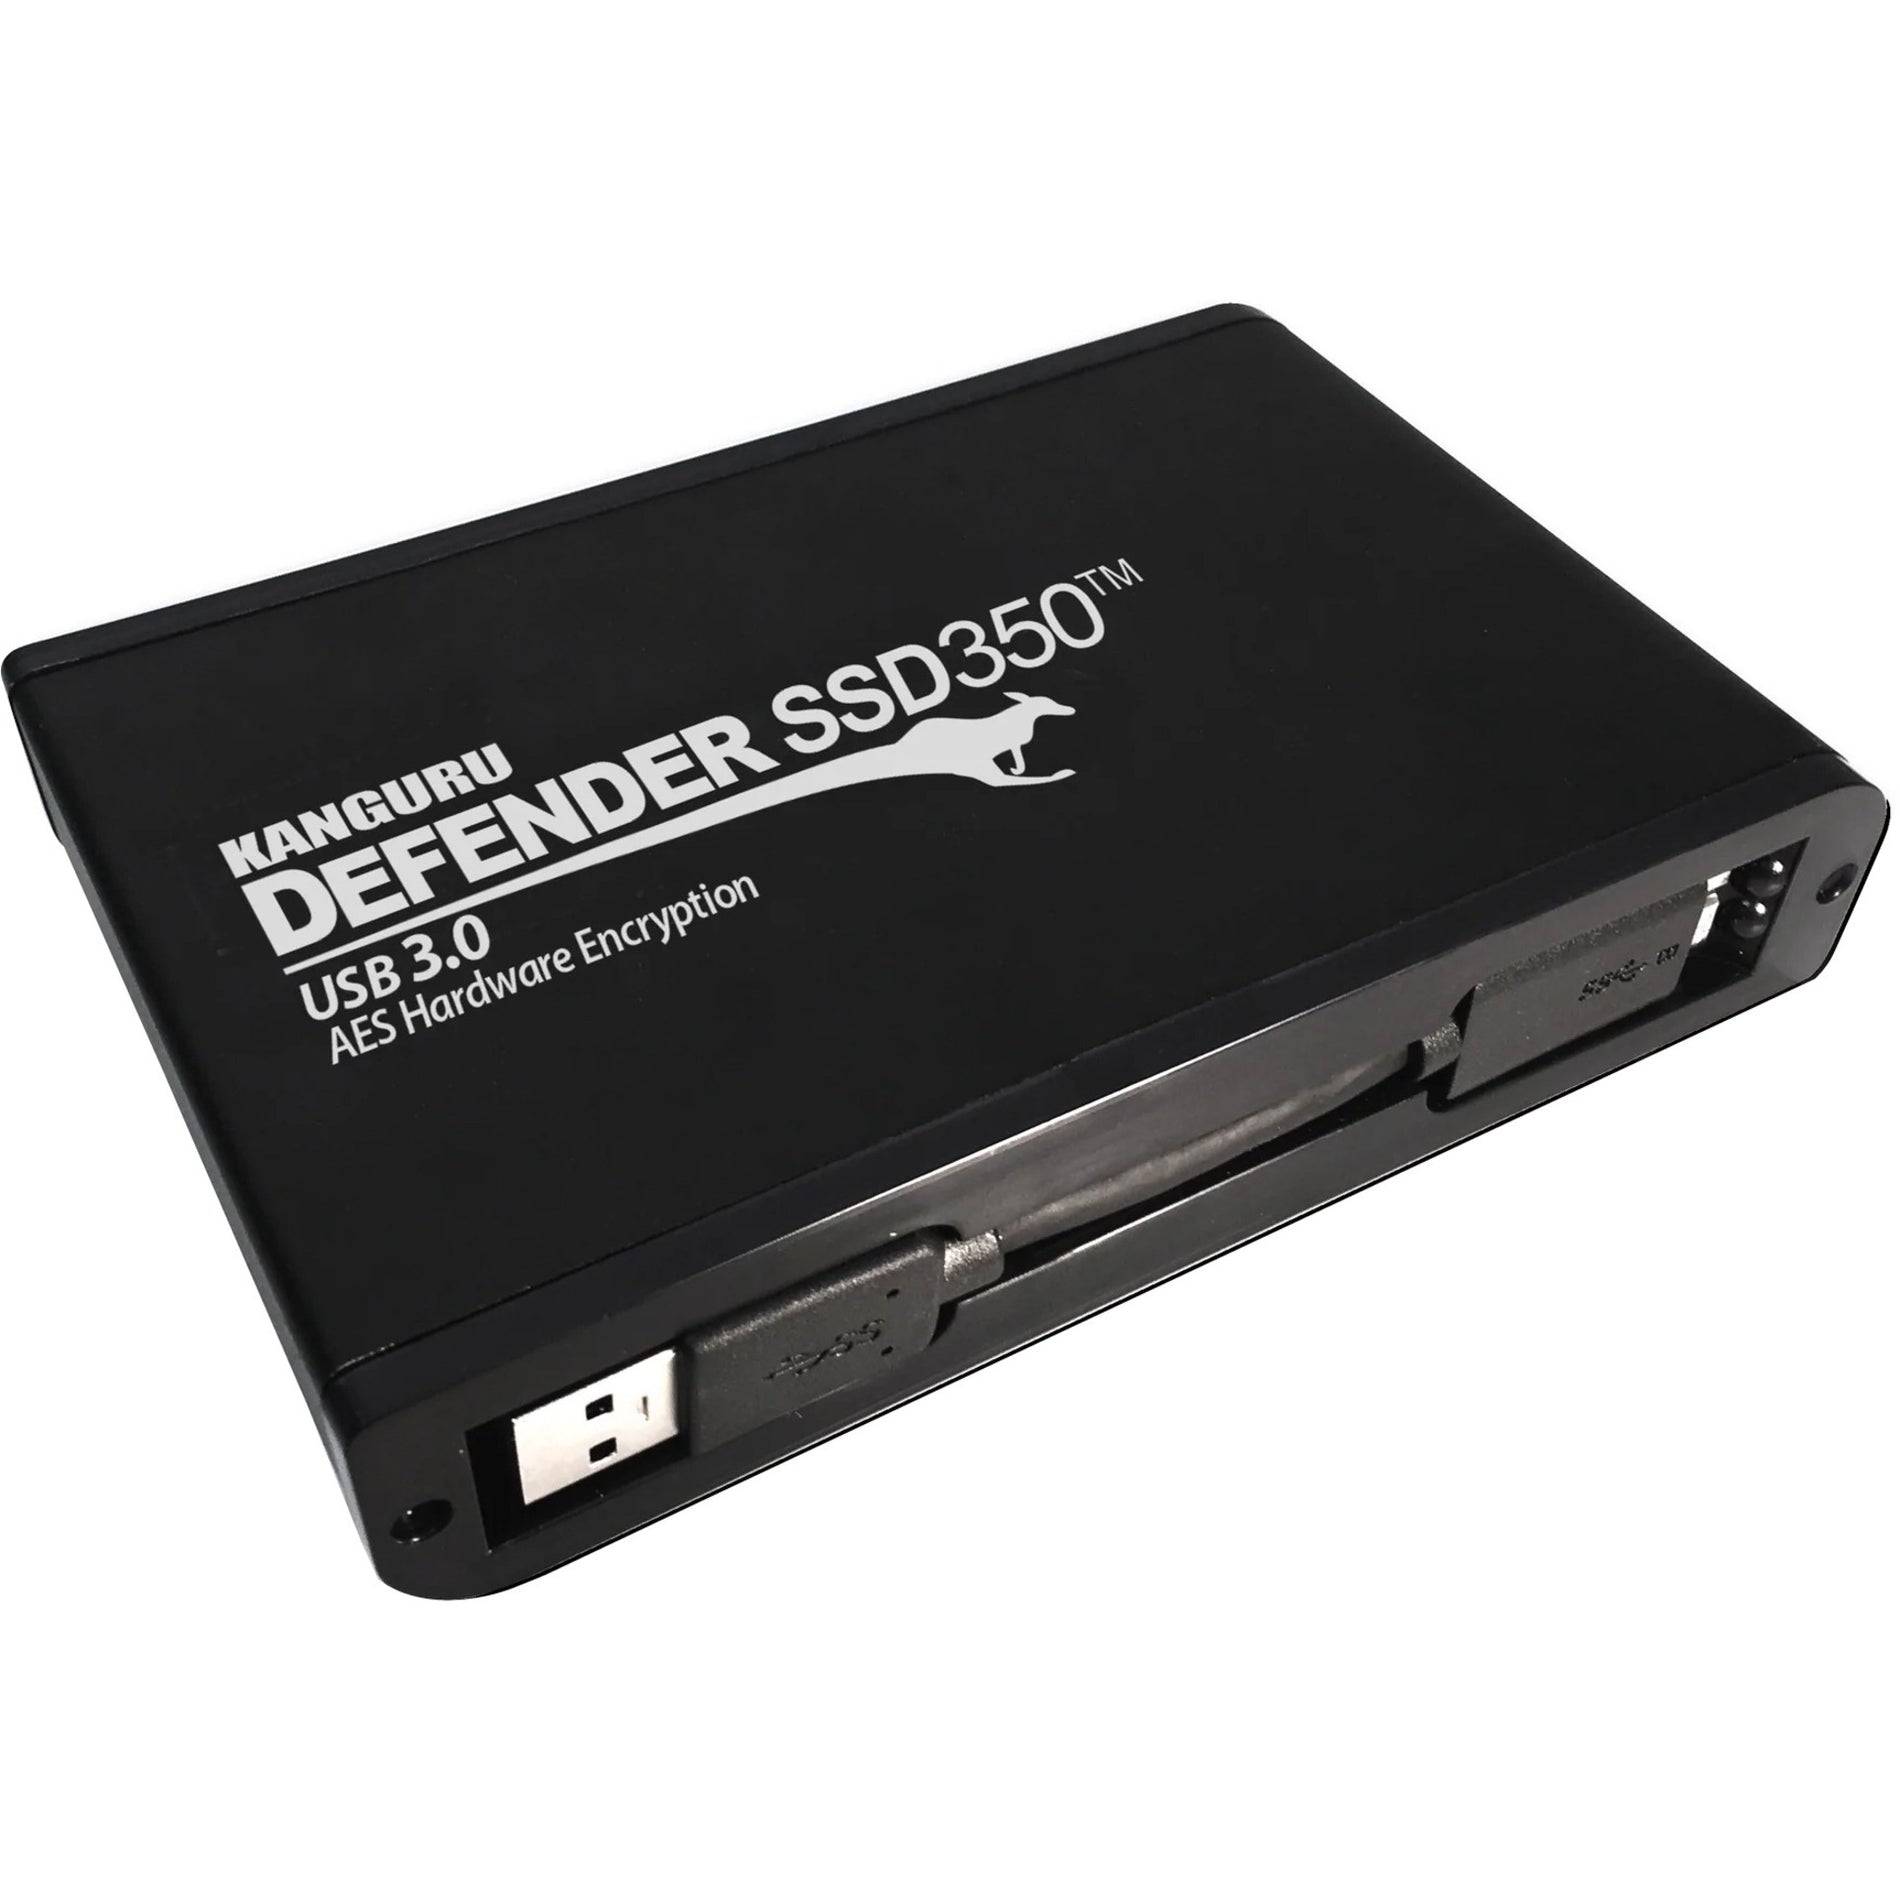 Kanguru KDH3B-350F-1TSSD Defender SSD350 Solid State Drive, 1TB, USB 3.2 (Gen 1), 256-bit Encryption